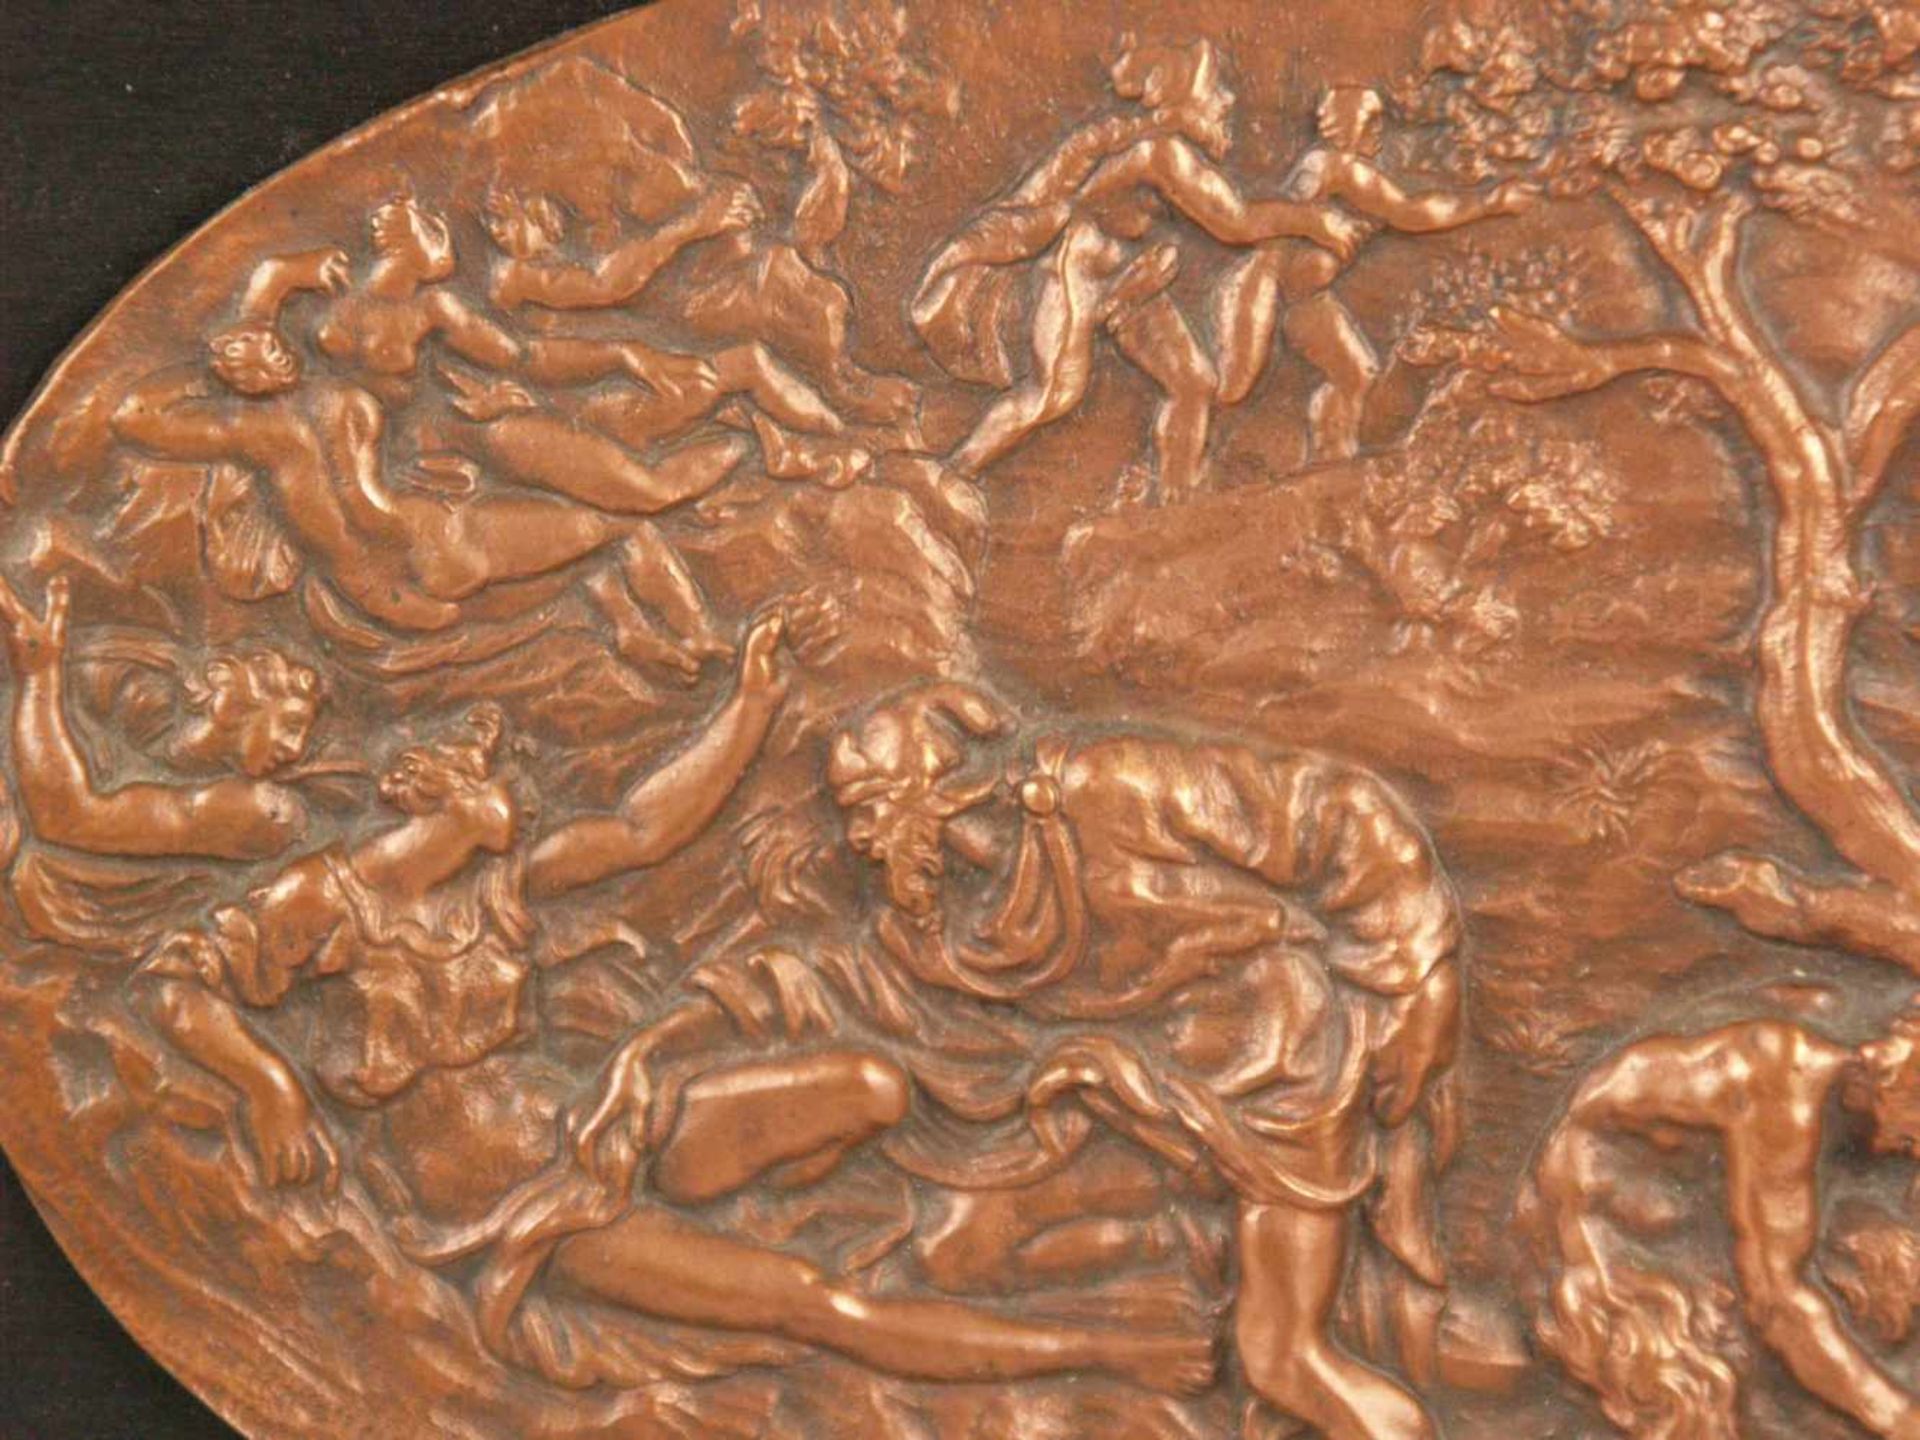 Ovale Reliefplakette "Bacchanal" - Kupfer bzw. Kupferbronze,aus mehreren Einzelszenen komponiertes - Bild 3 aus 5